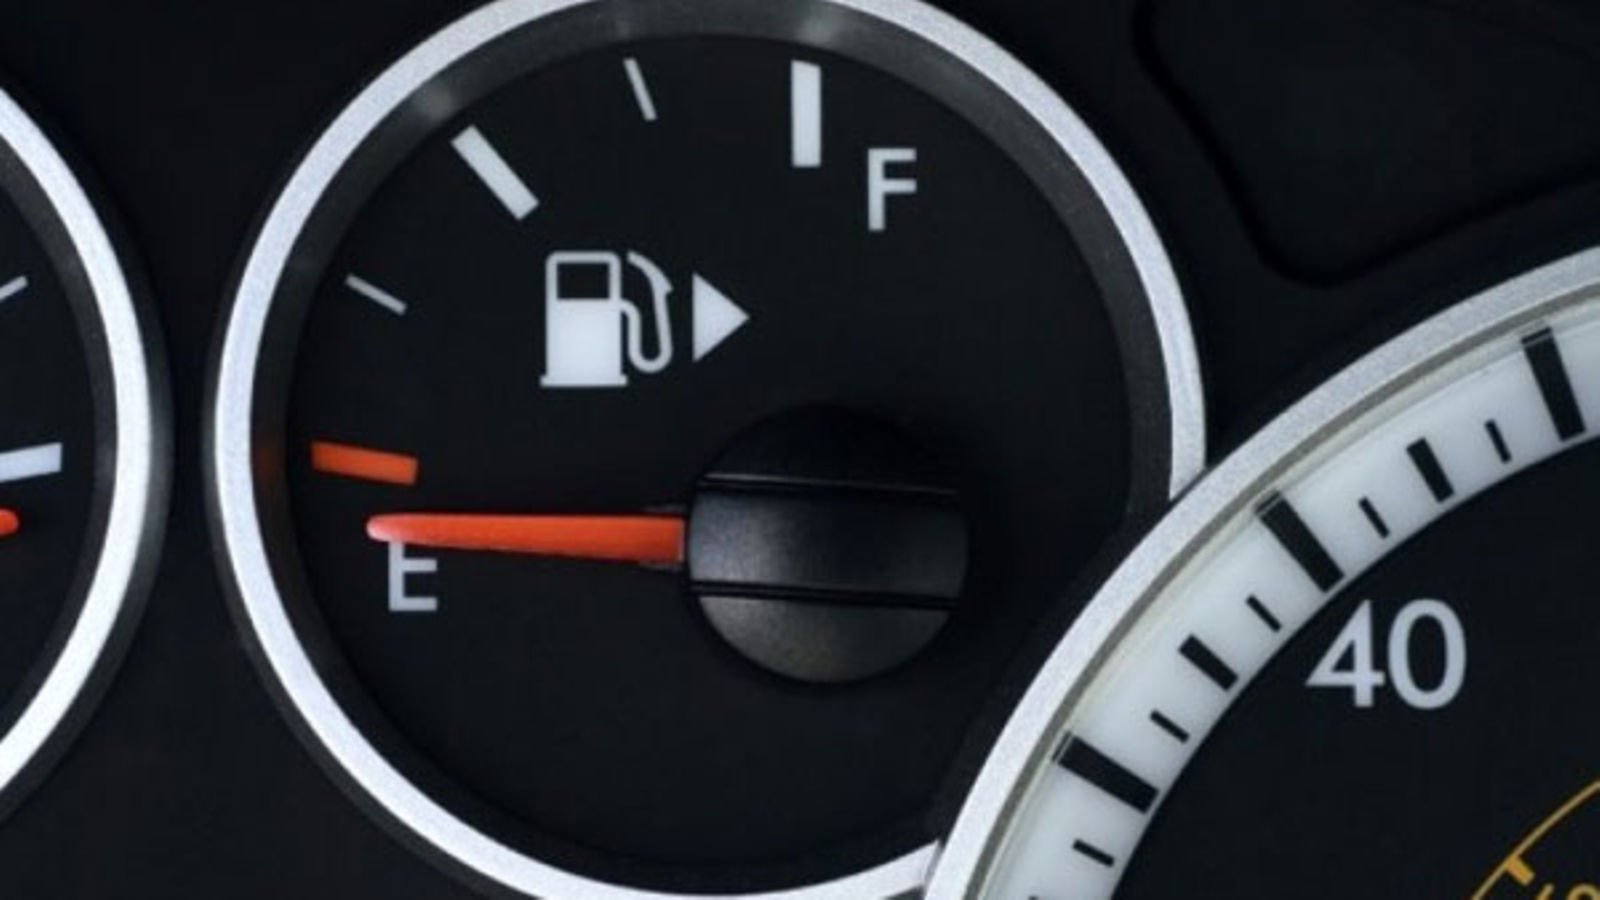 Fuel gauge showing an empty tank